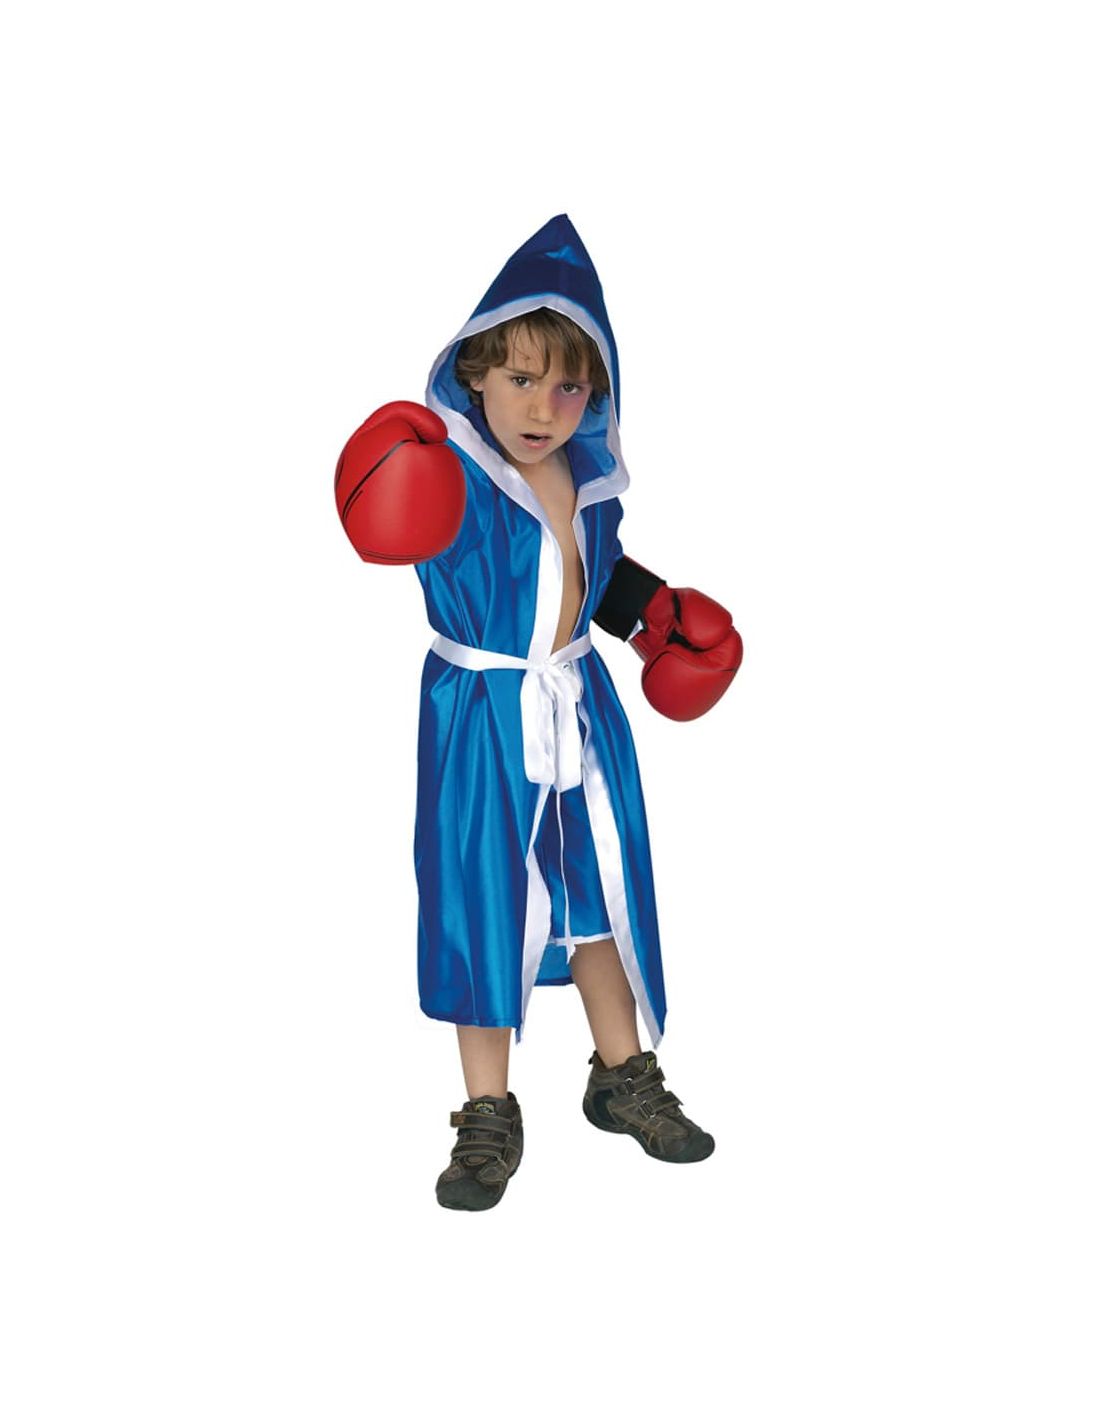 Costumizate!  Disfraz de Boxeador para niño, tallas a elegir. Colección  Carnaval